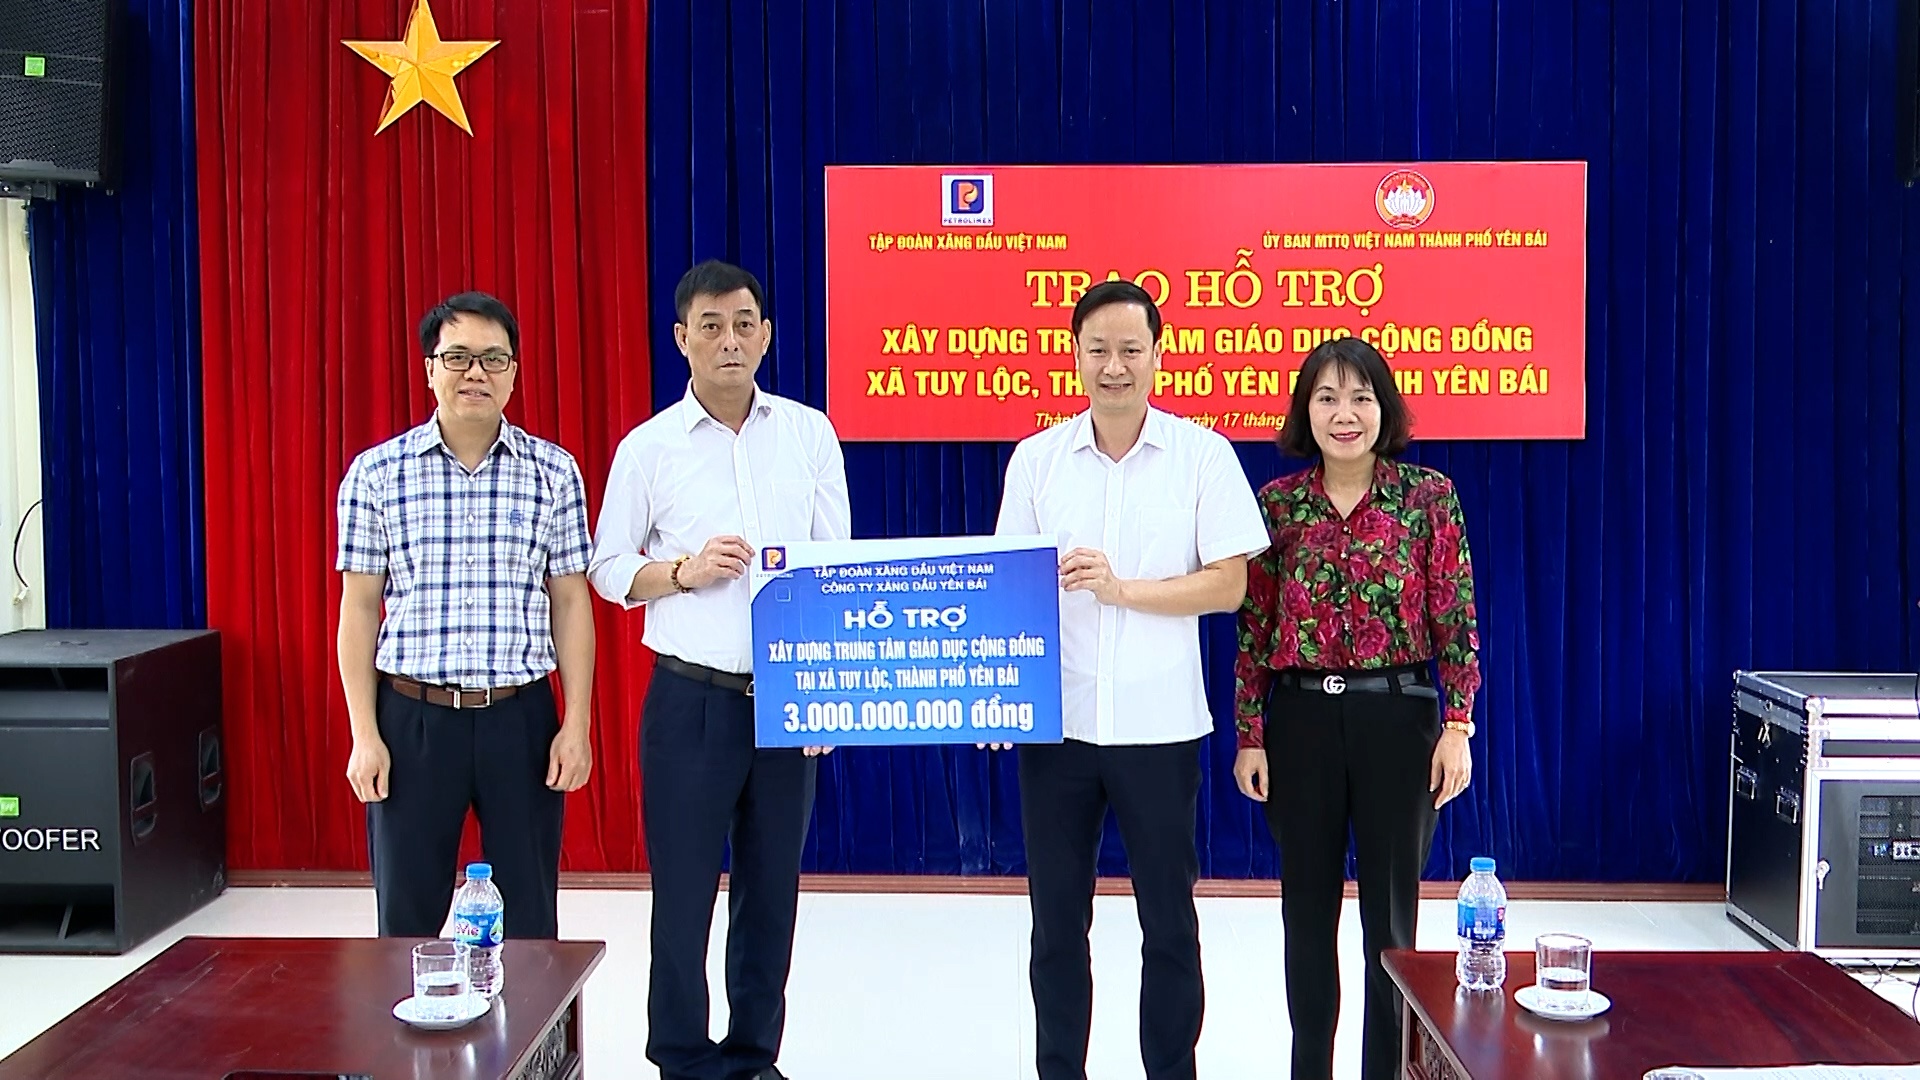 Tập đoàn Xăng dầu Việt Nam hỗ trợ 3 tỷ đồng xây dựng Trung tâm Giáo dục cộng đồng tại xã Tuy Lộc, thành phố Yên Bái